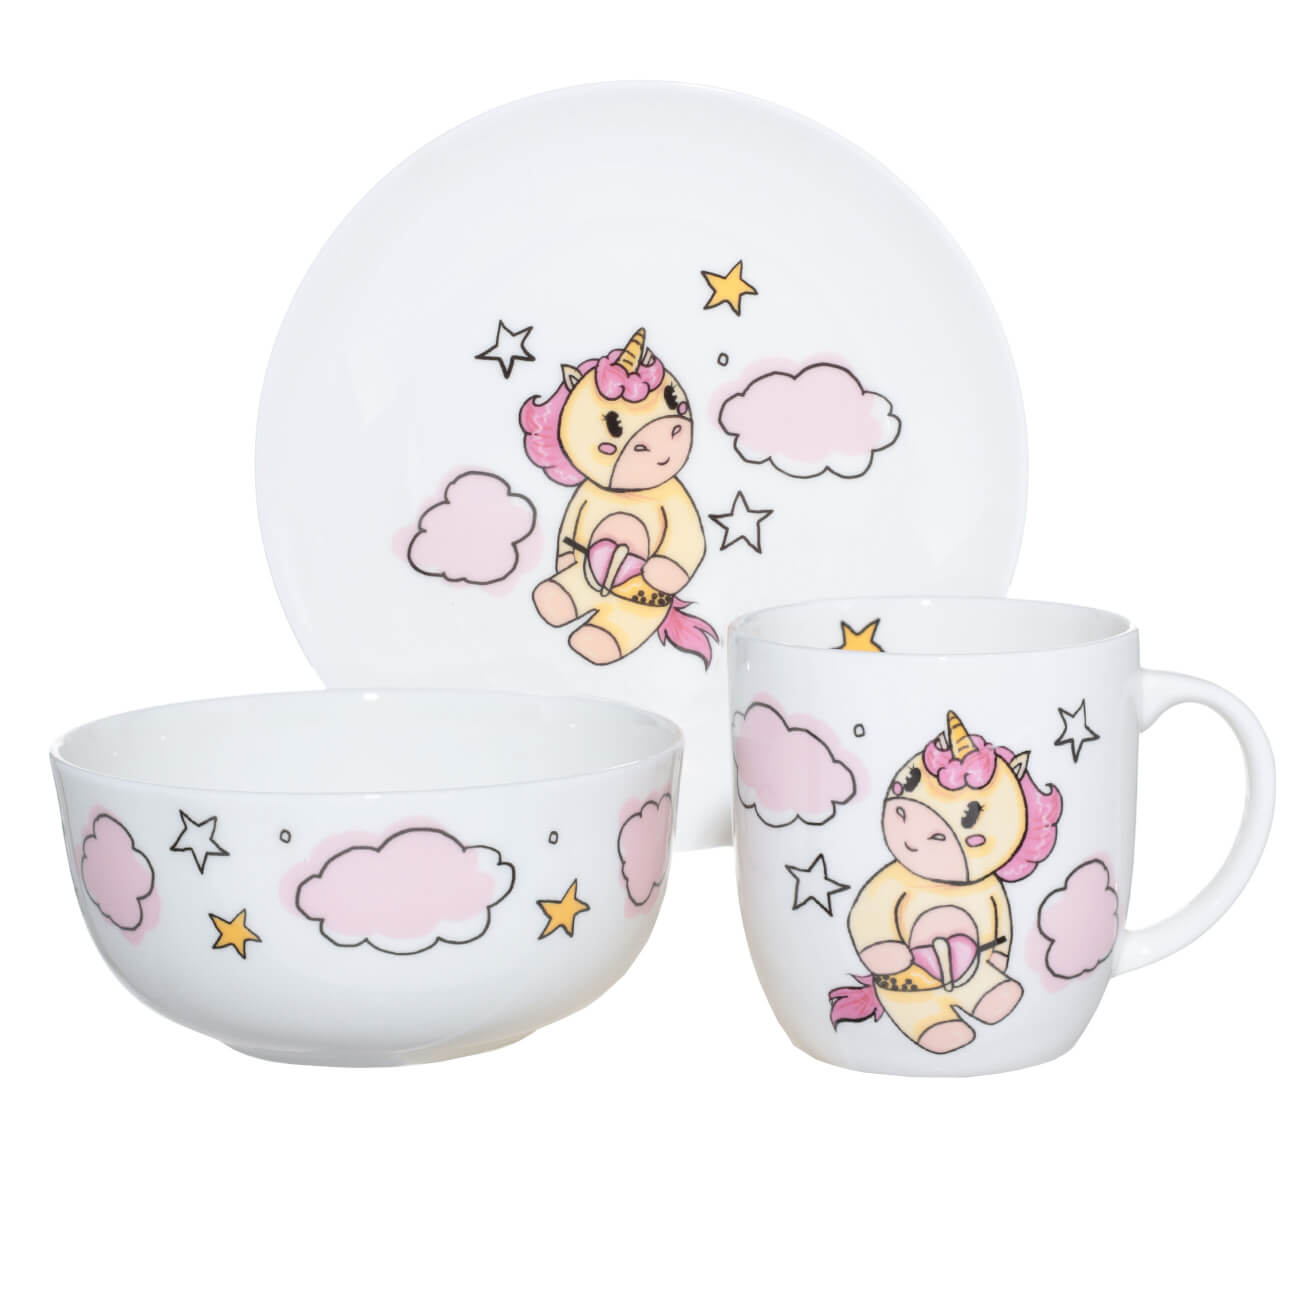 Набор посуды, детский, 3 пр, фарфор F, бело-розовый, Единорог в облаках, Unicorn люлька звёздный единорог